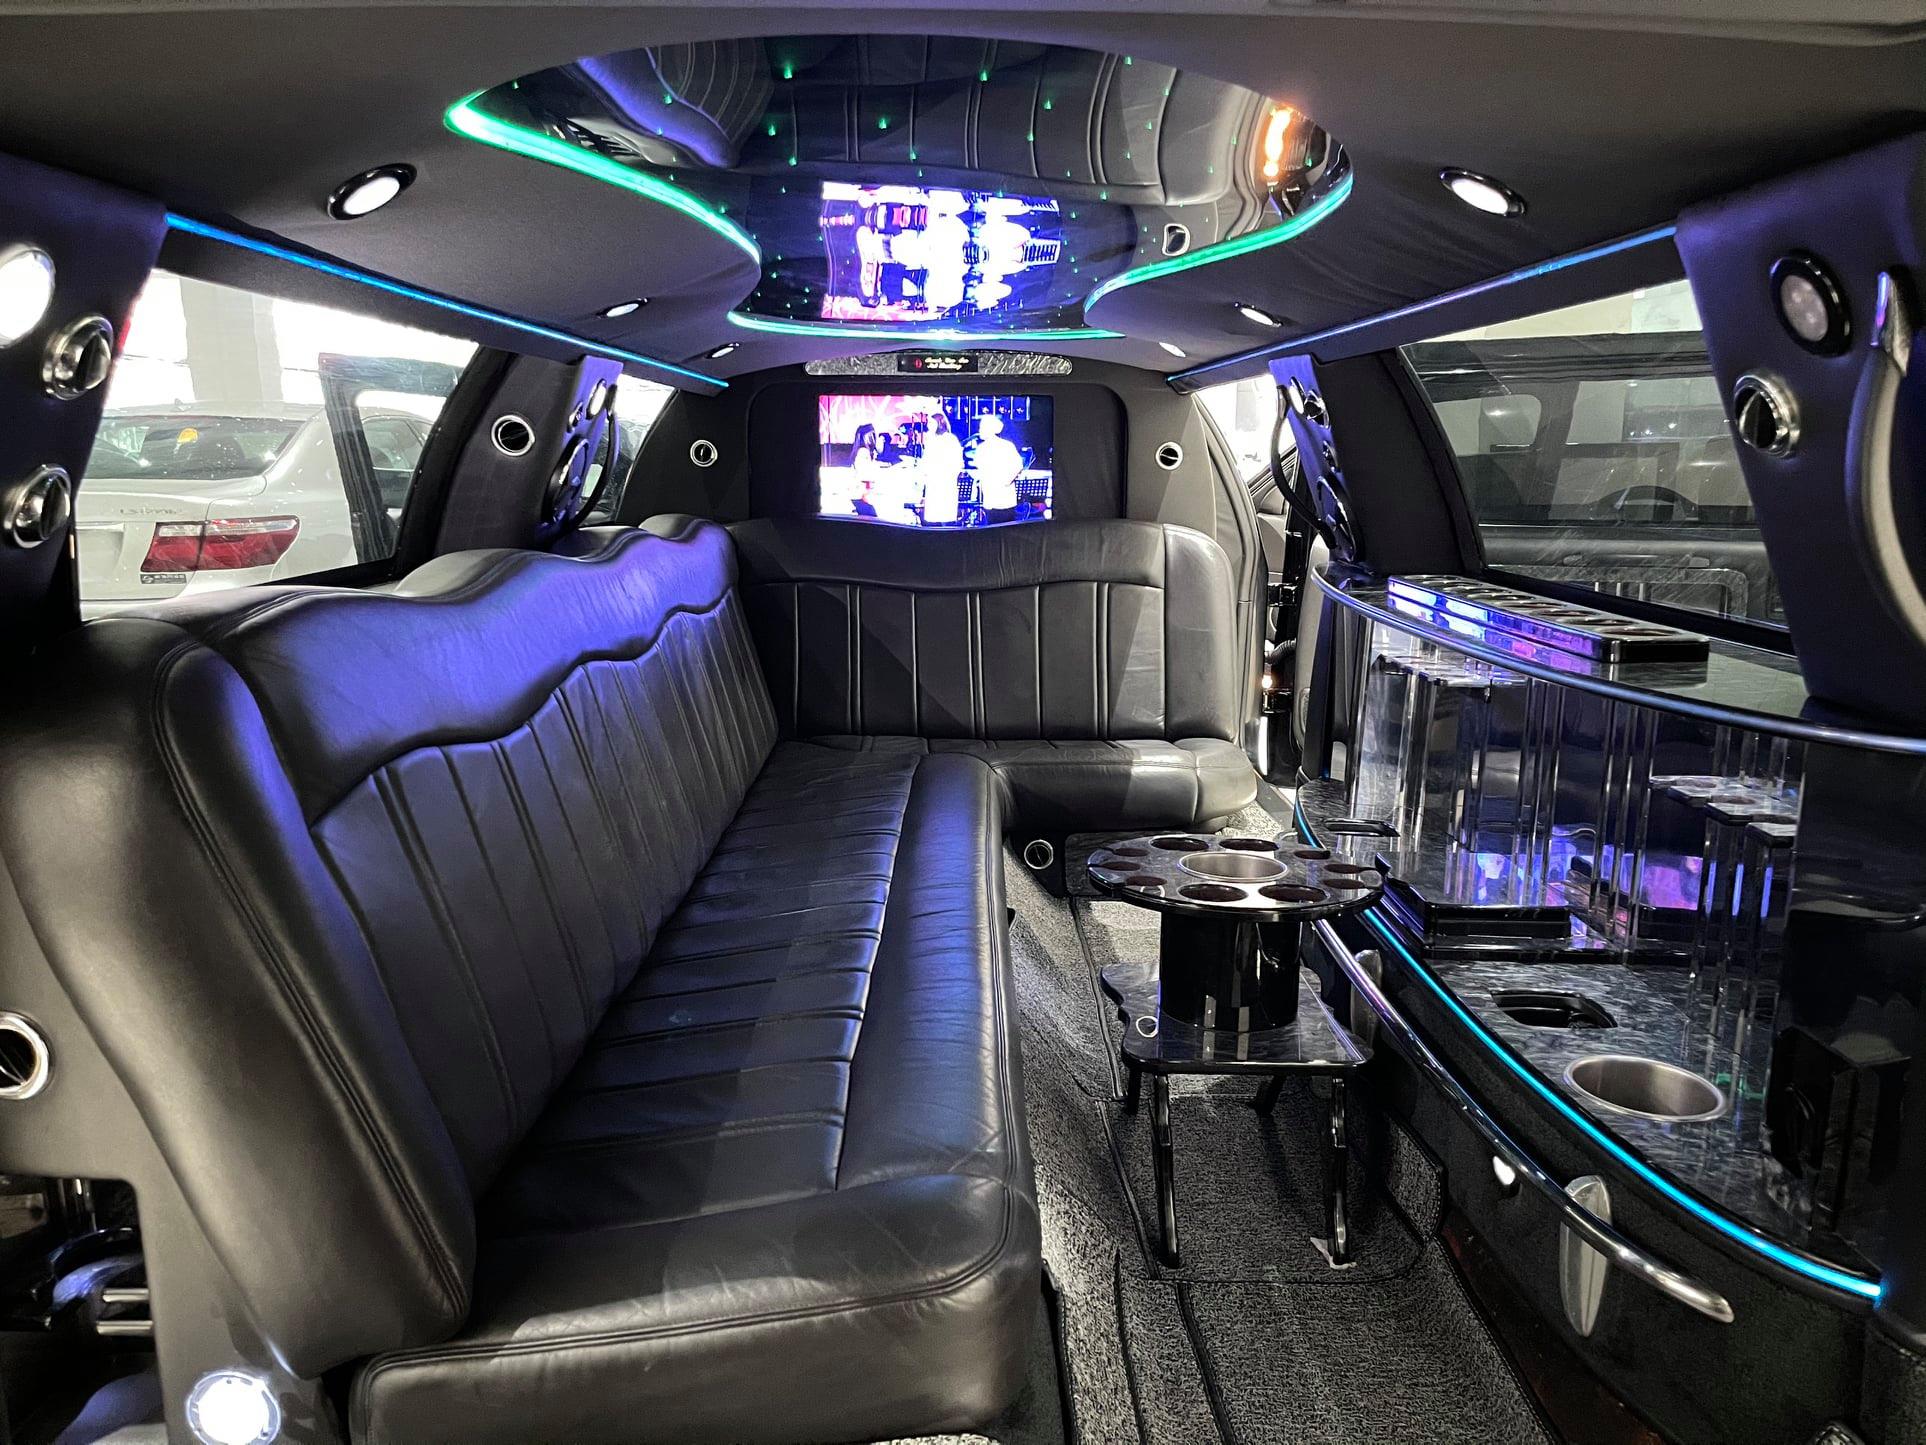 Giữ mới cả thập kỷ, chủ nhân hàng hiếm limousine bán xe với giá chỉ 2,6 tỷ đồng - Ảnh 4.